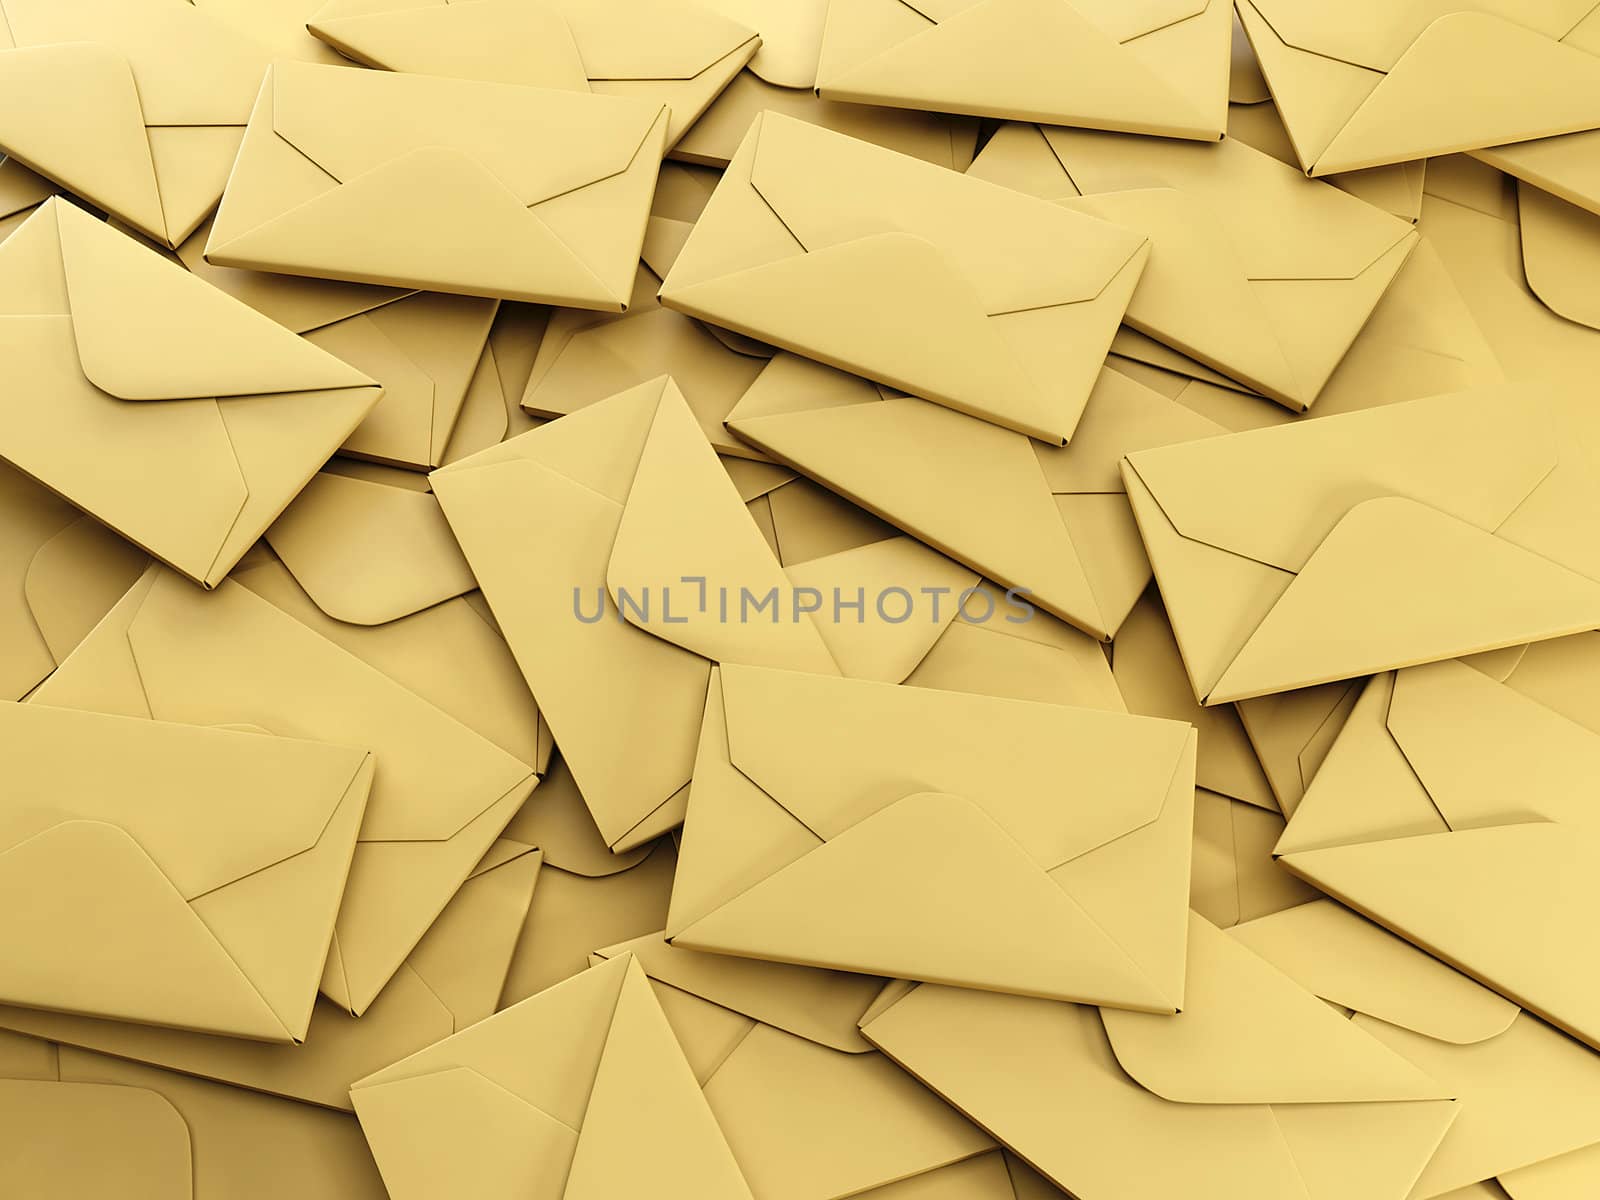 3d illustration: A group of envelopes